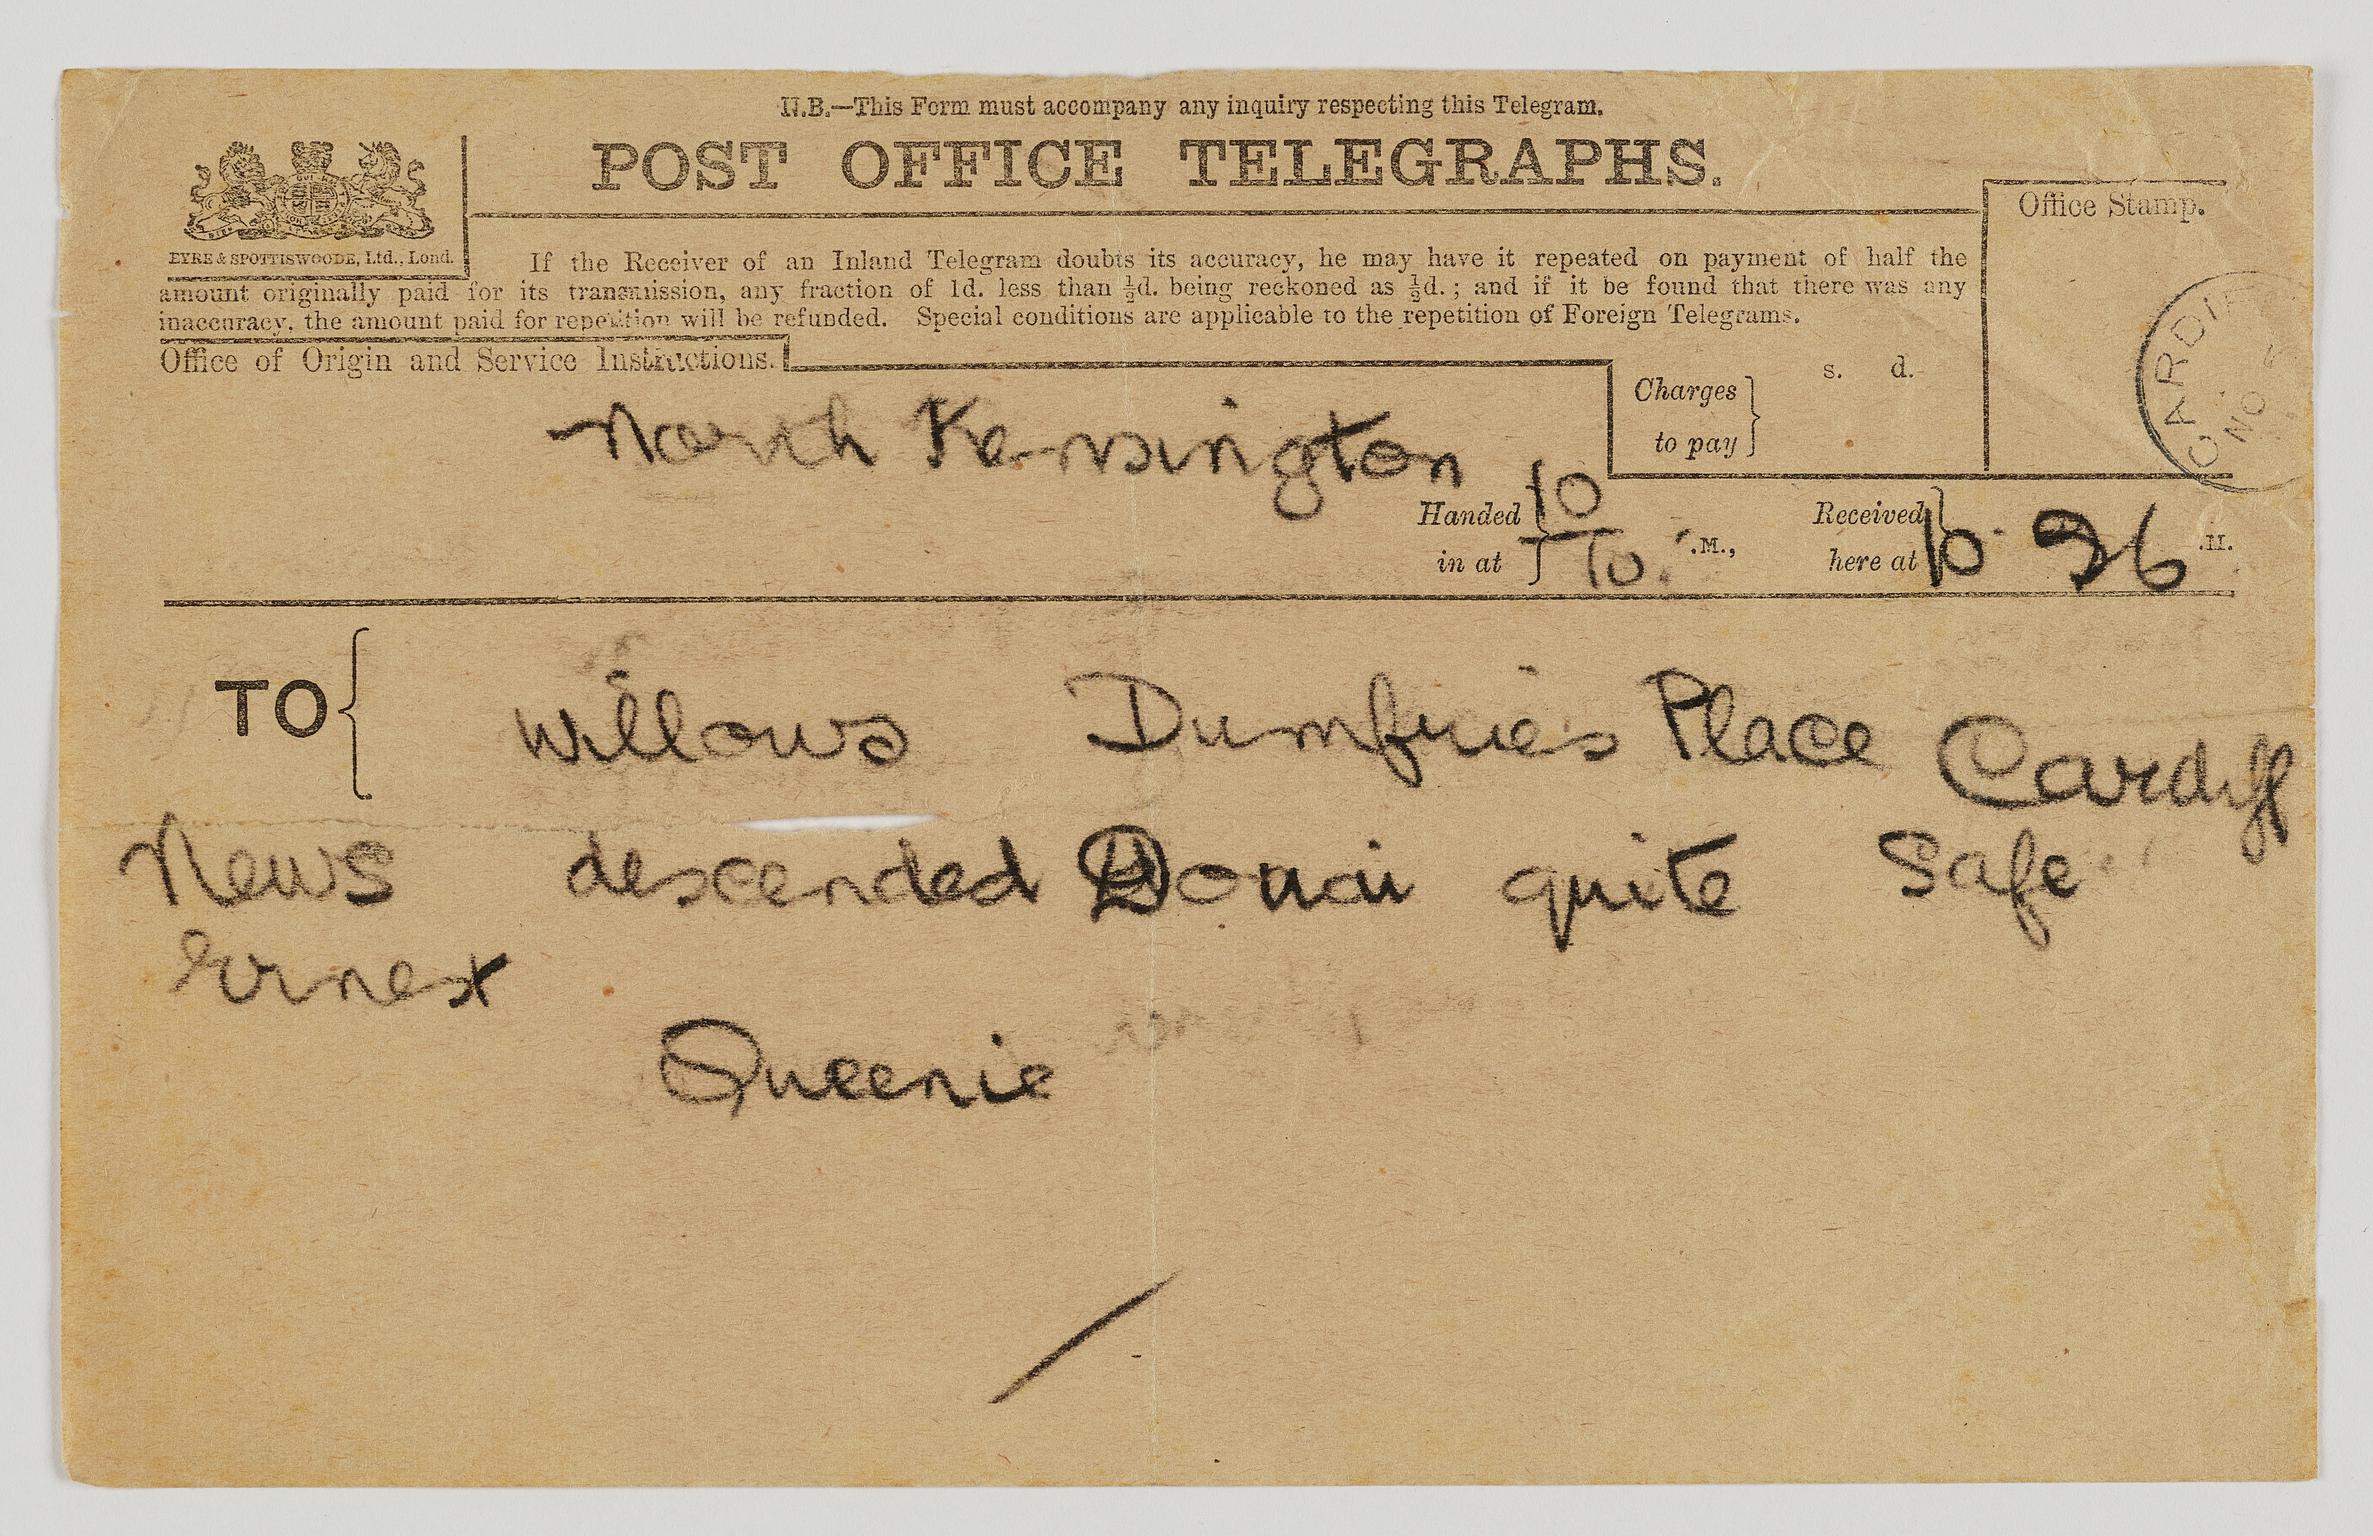 Ernest Willows, telegram